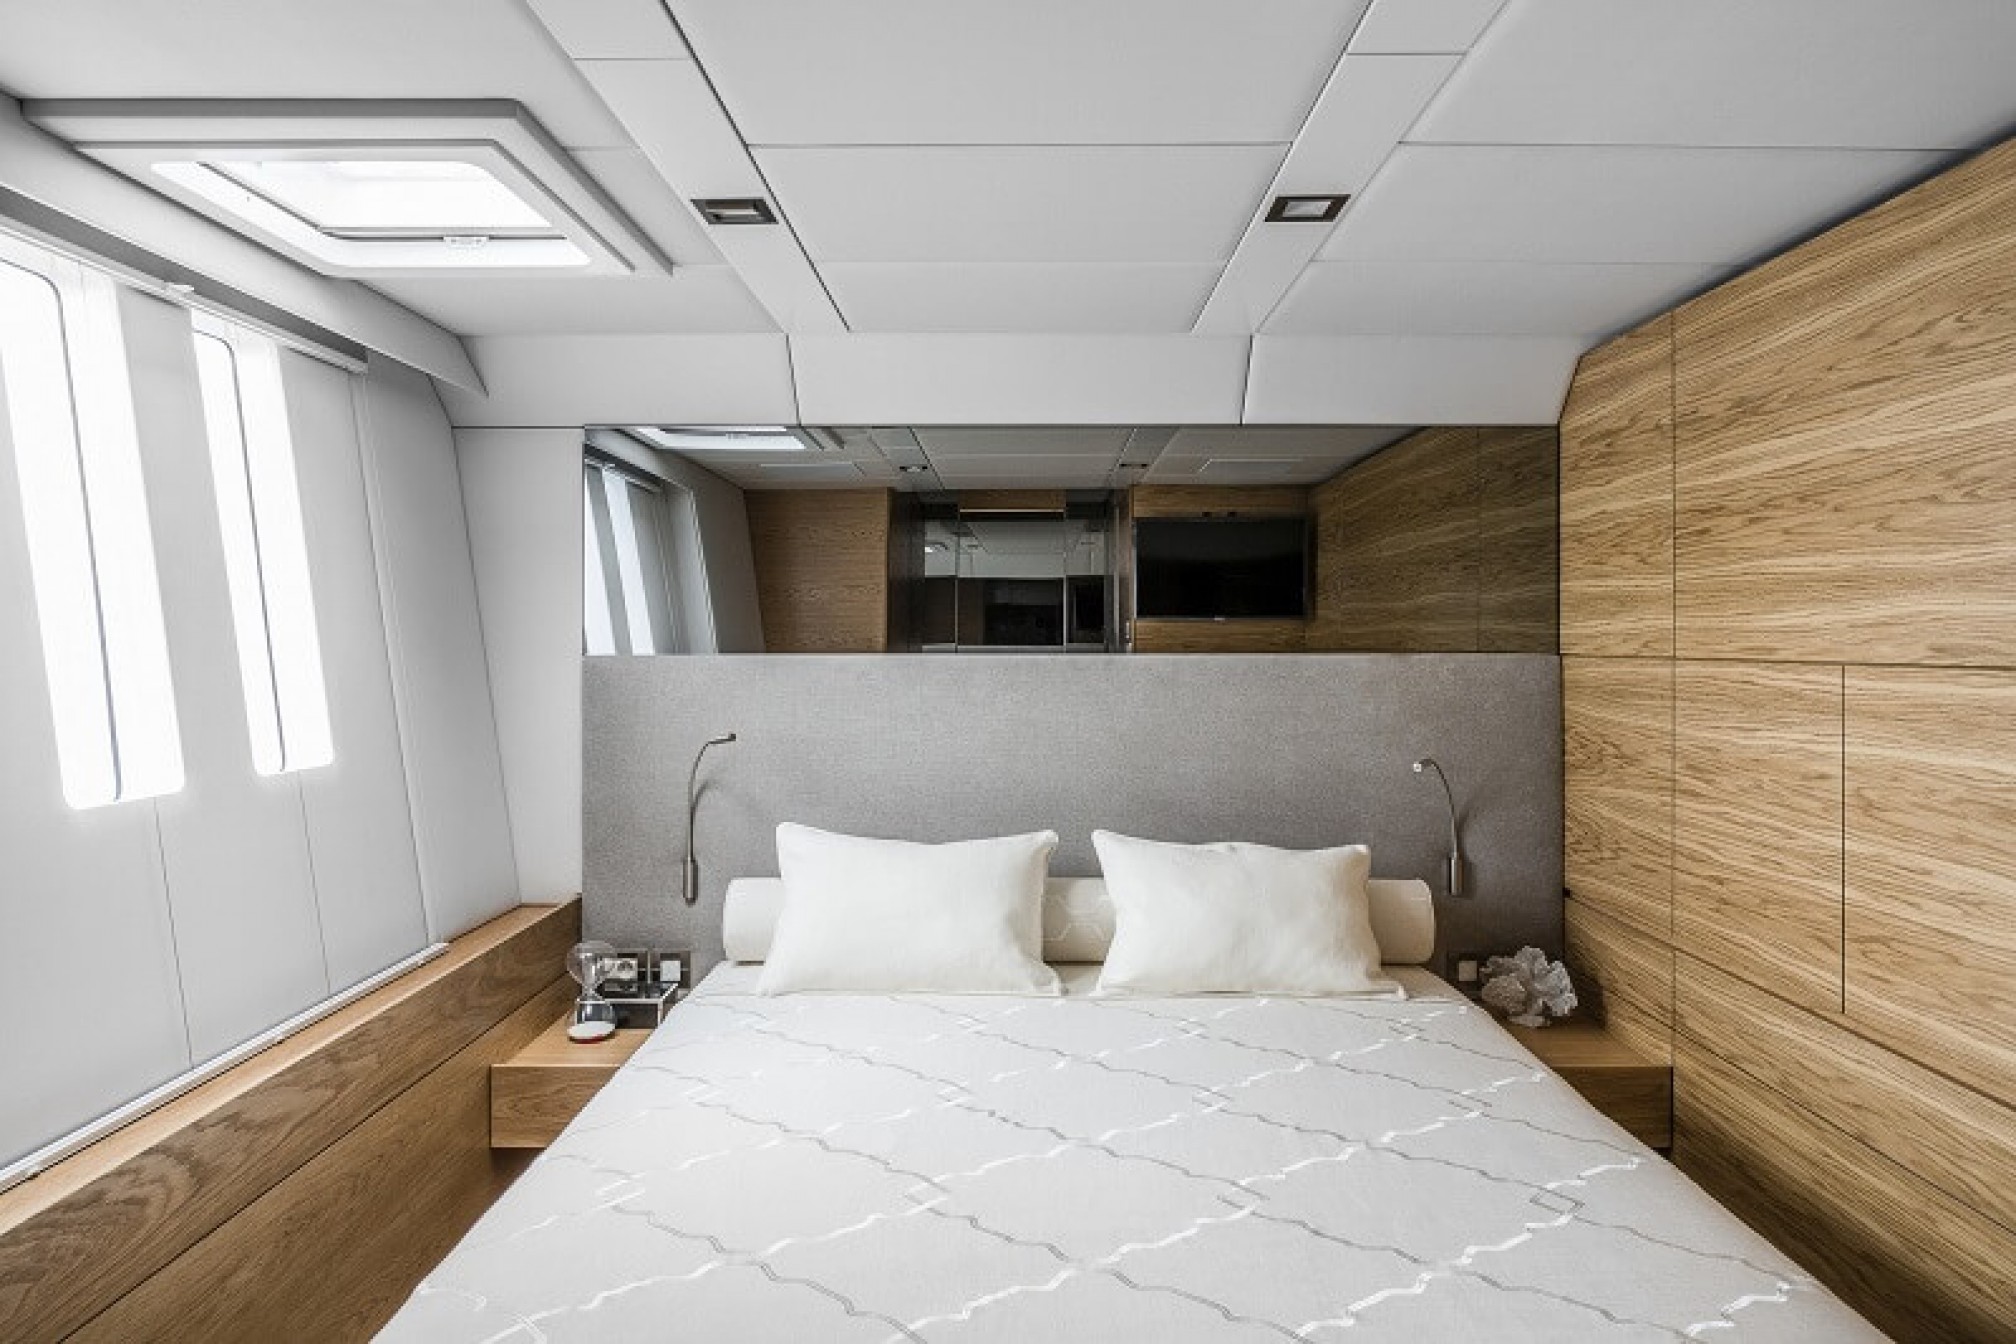 Sunreef 74 'CALMAO' catamaran charter cabin